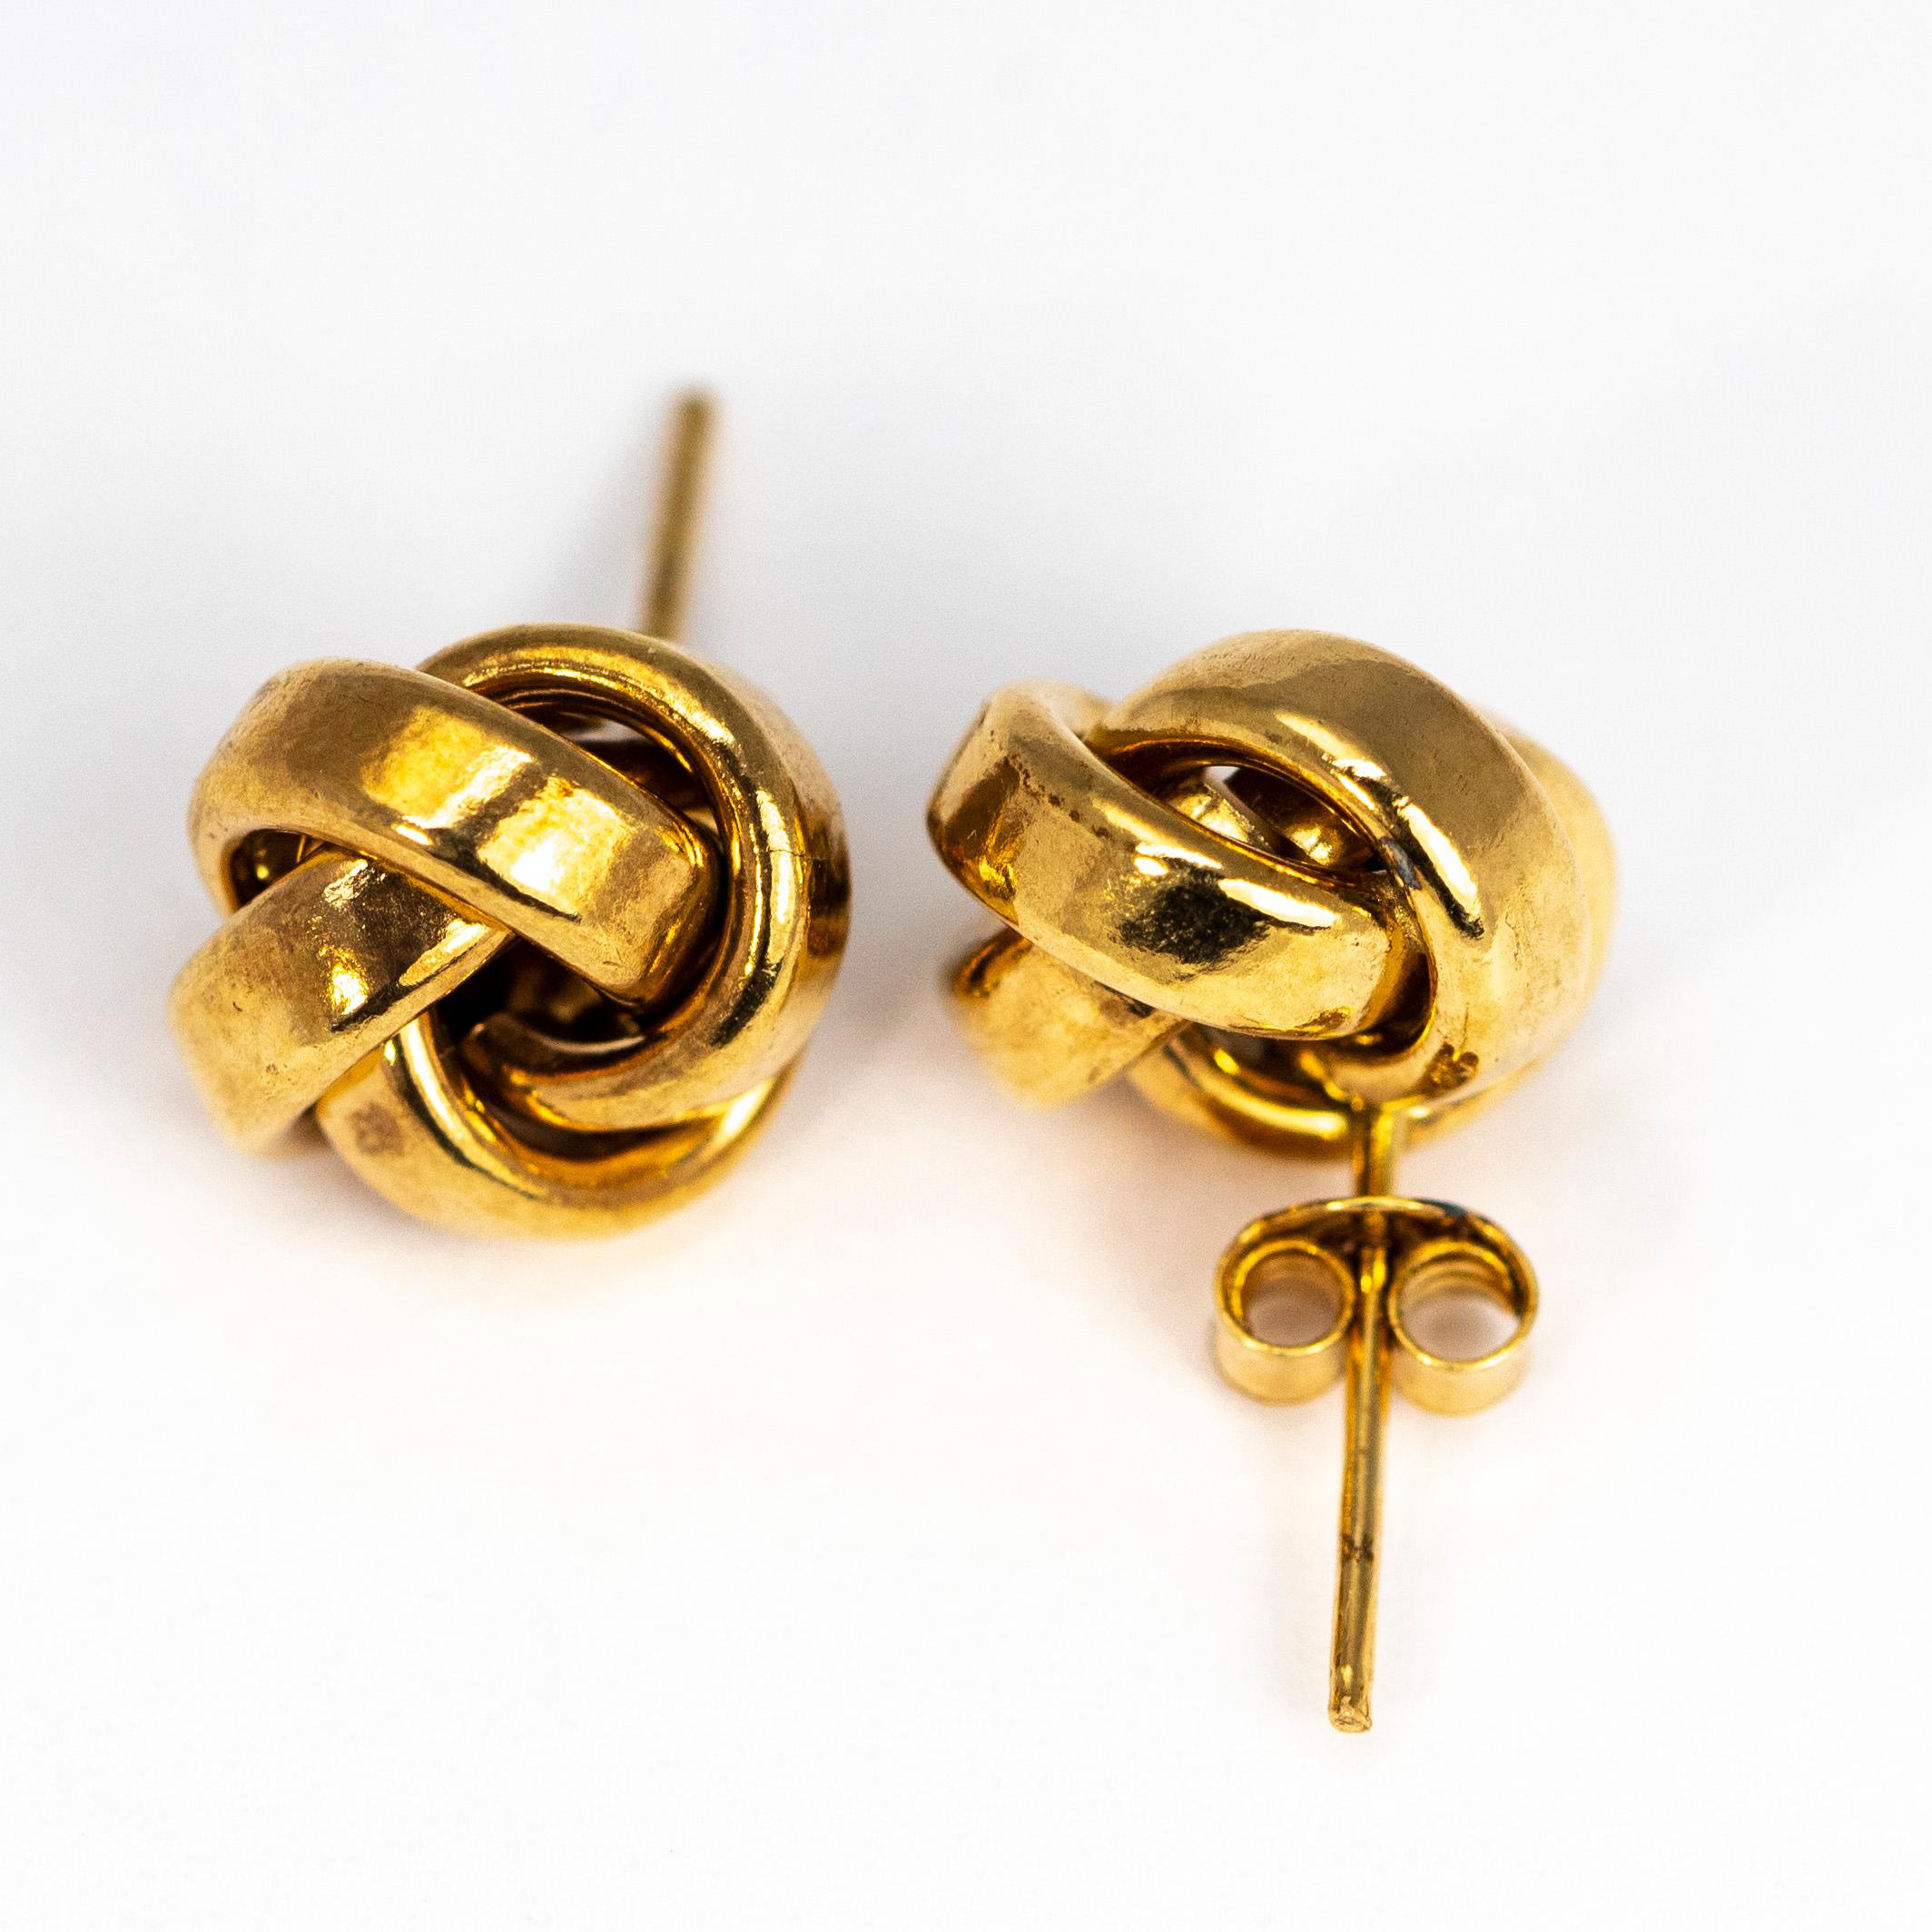 9 carat gold stud earrings